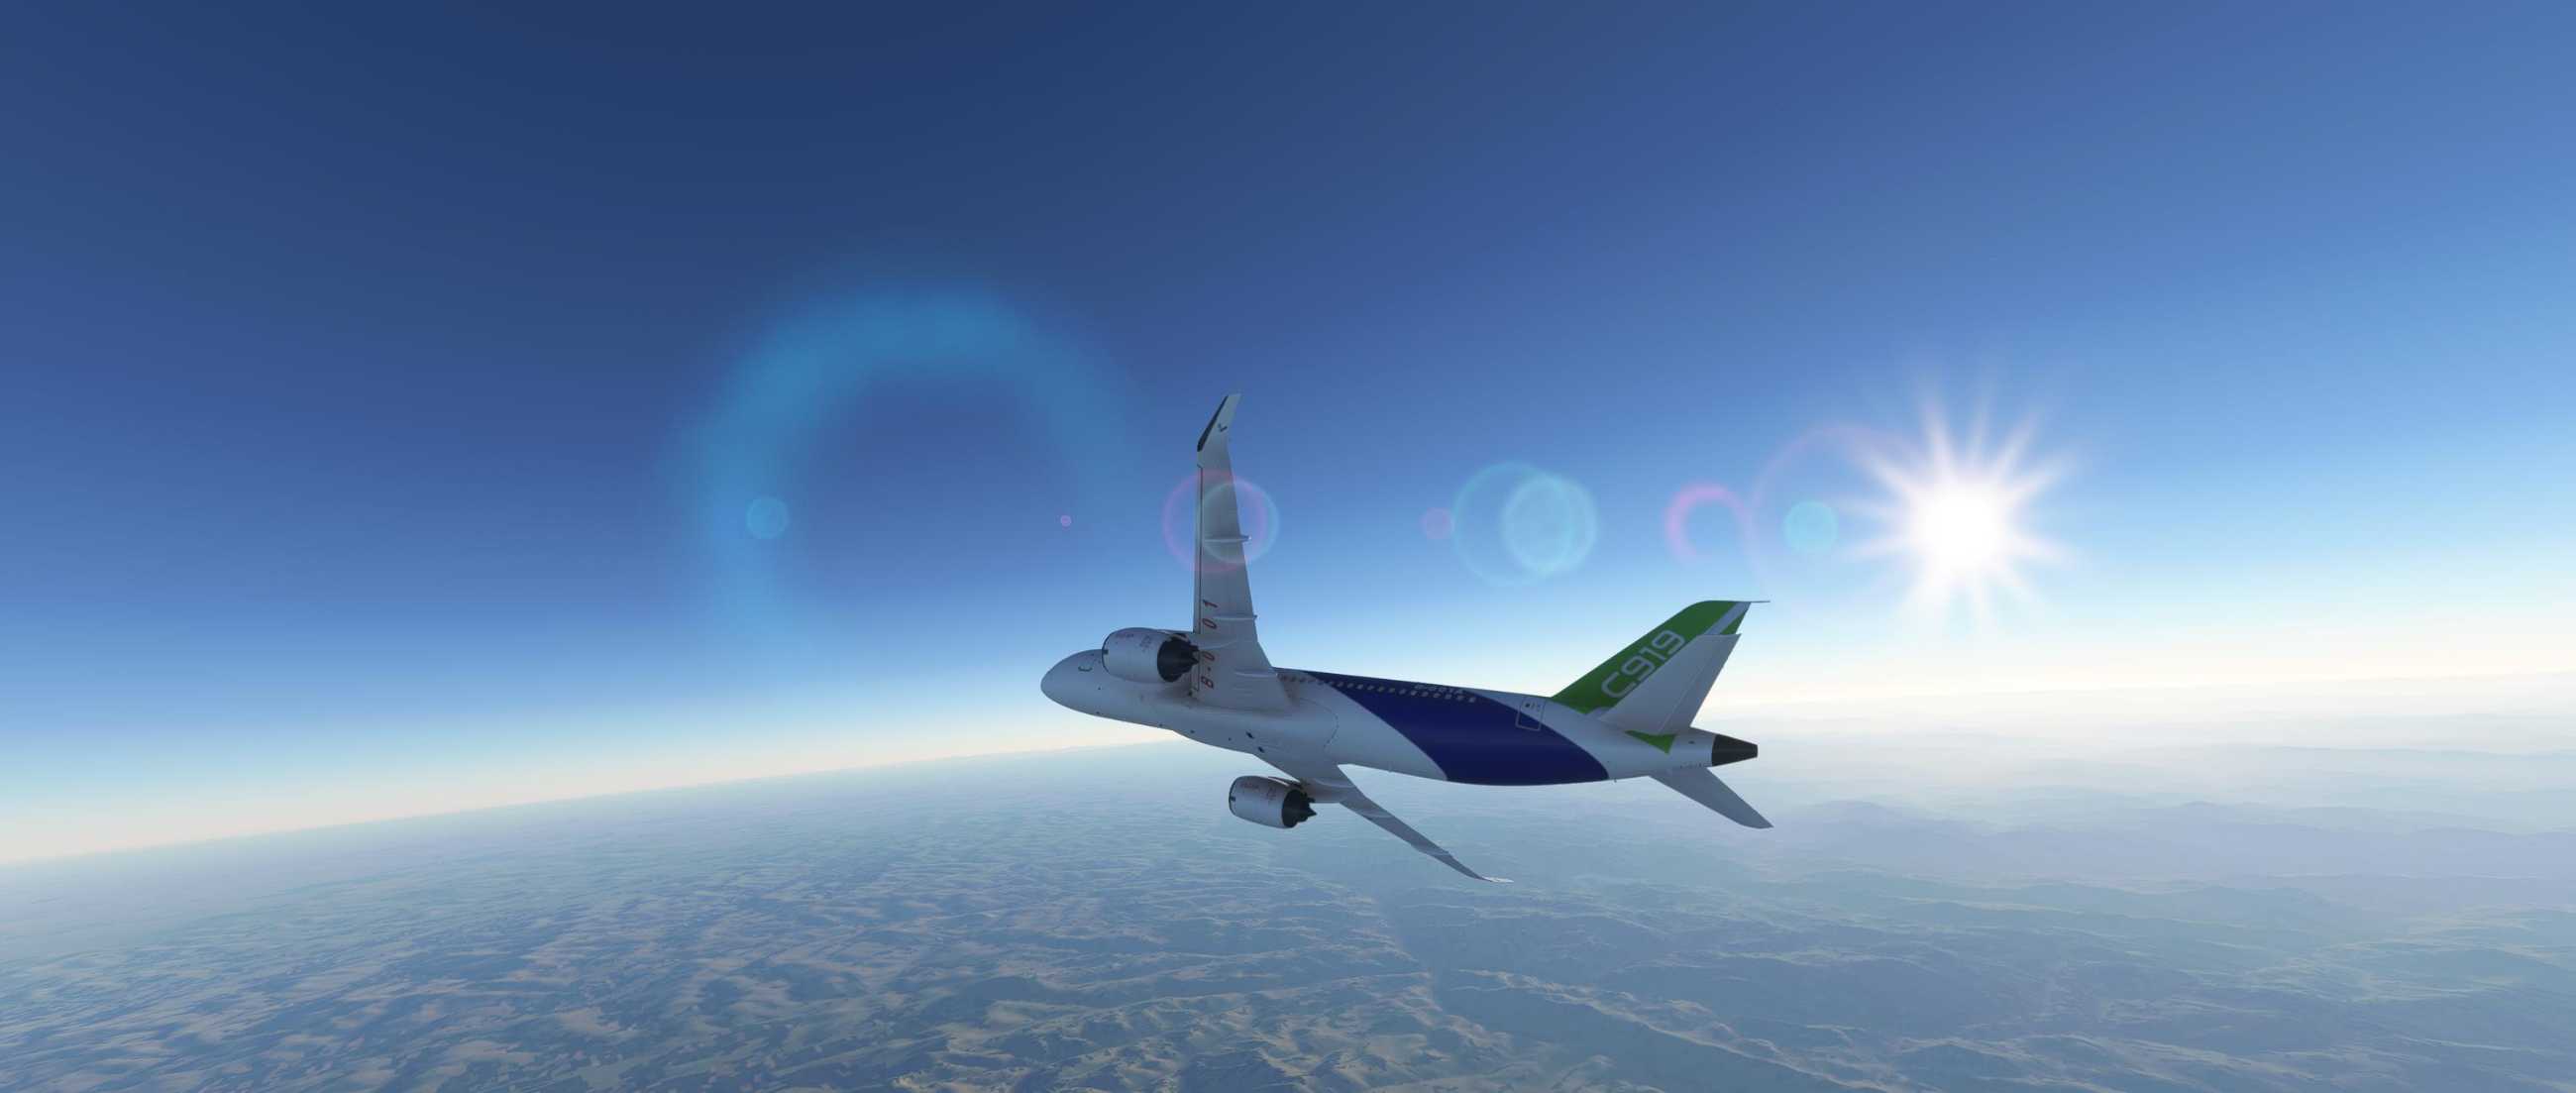 FYCYC-C919 国产大飞机机模 微软模拟飞行演示-2886 